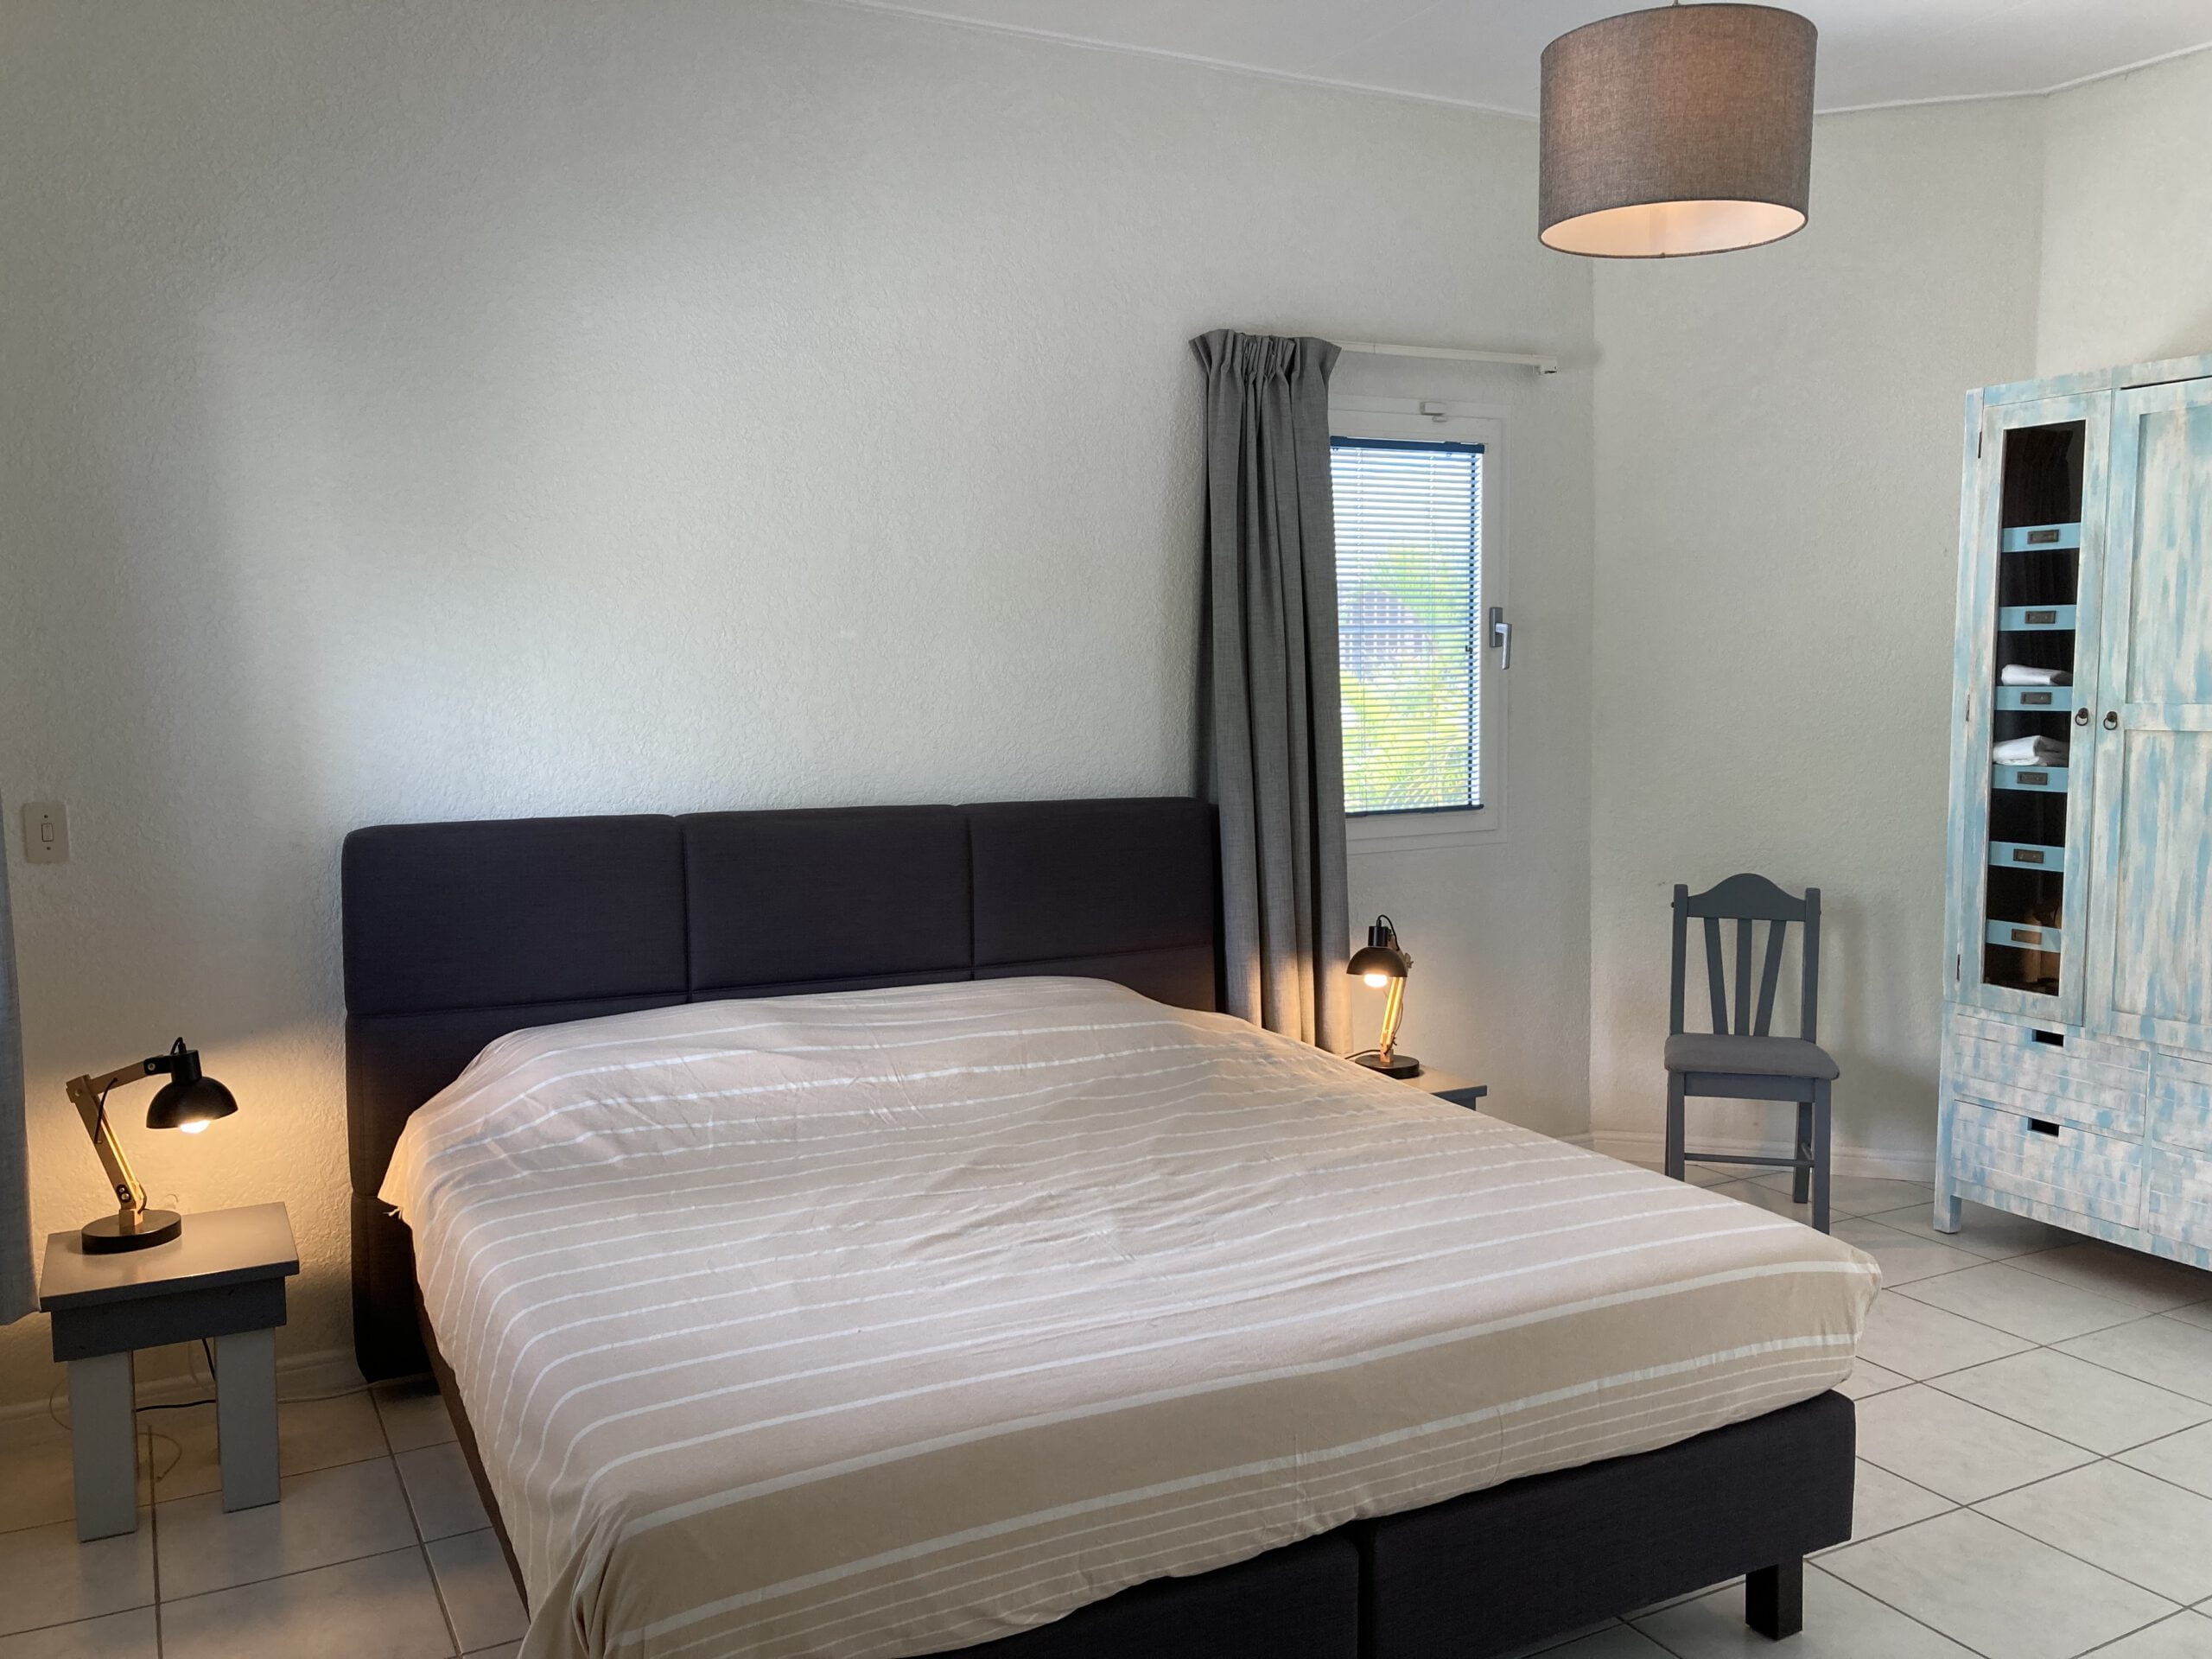 Bedroom 1 villa 339 near mambo beach